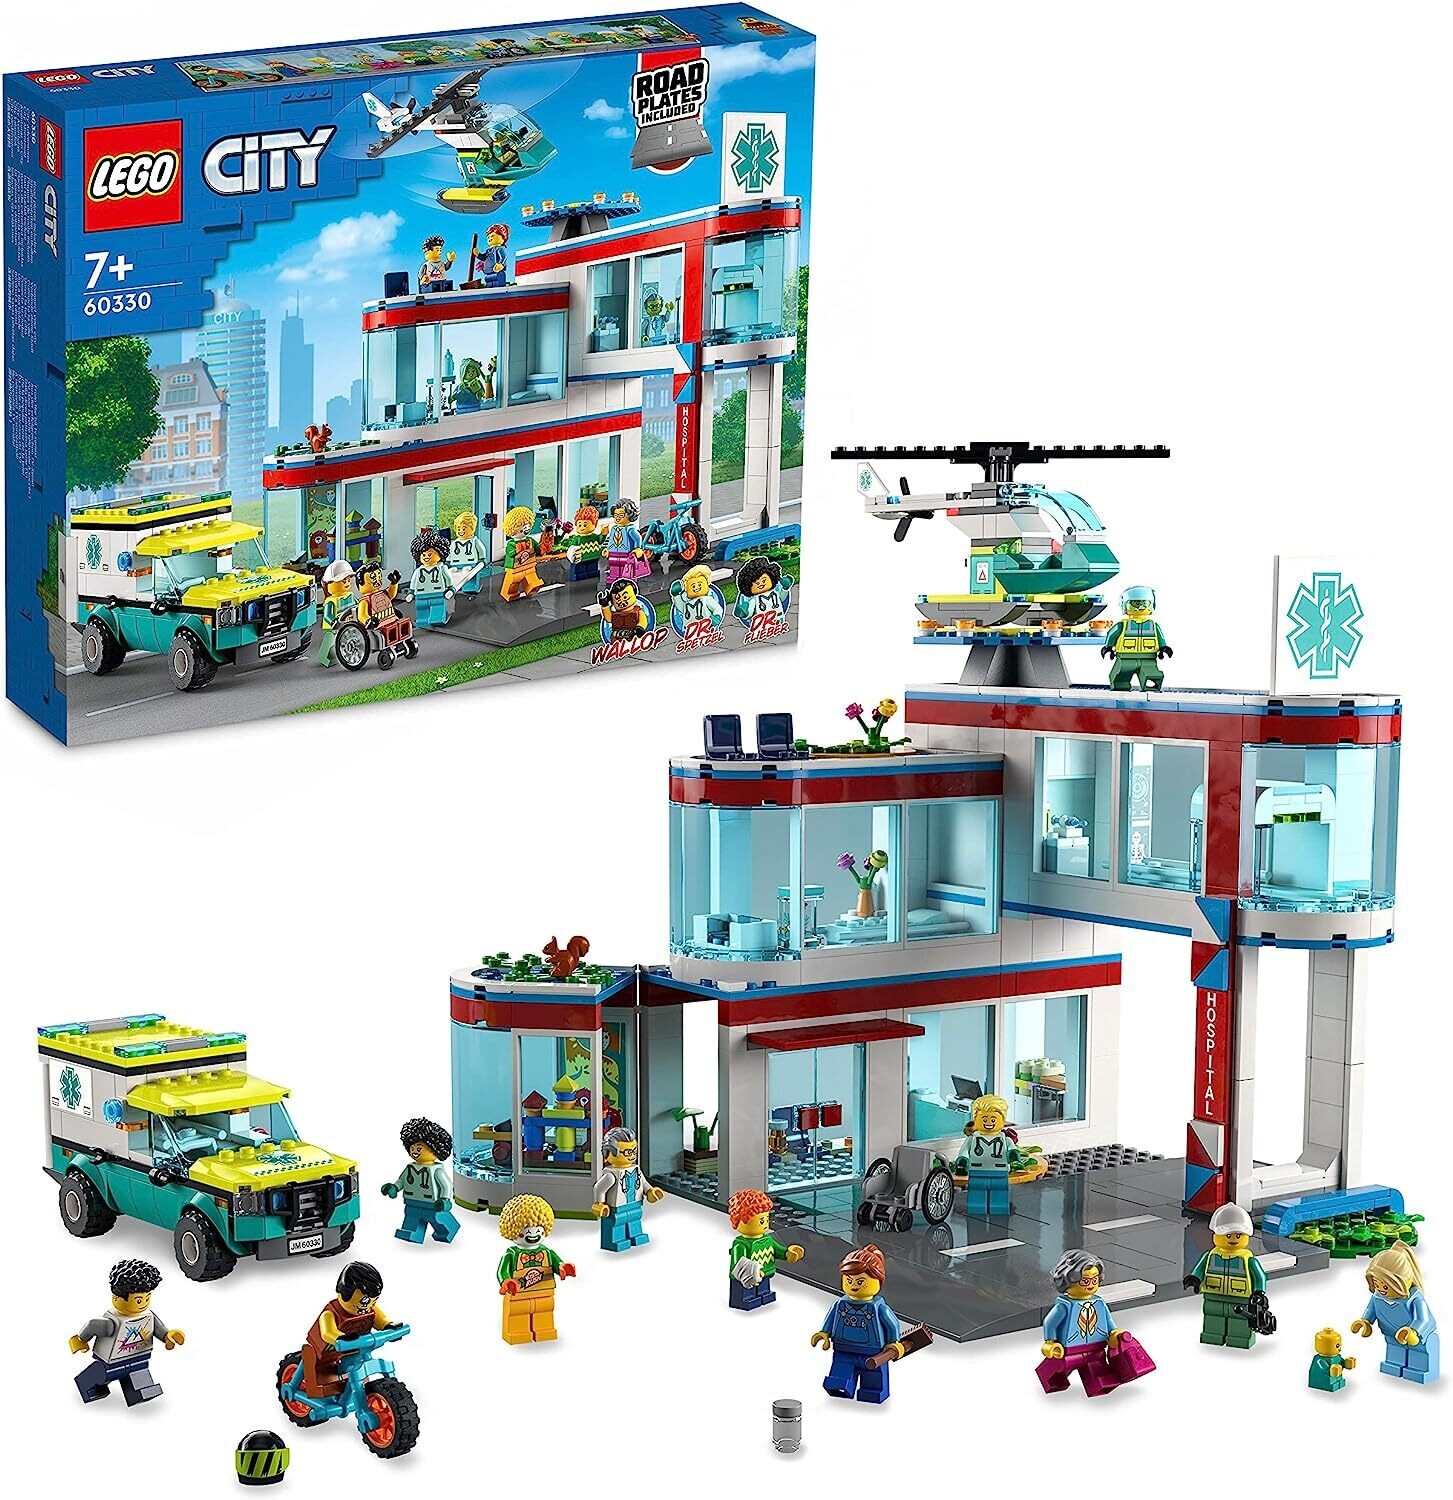 L'hôpital Lego City